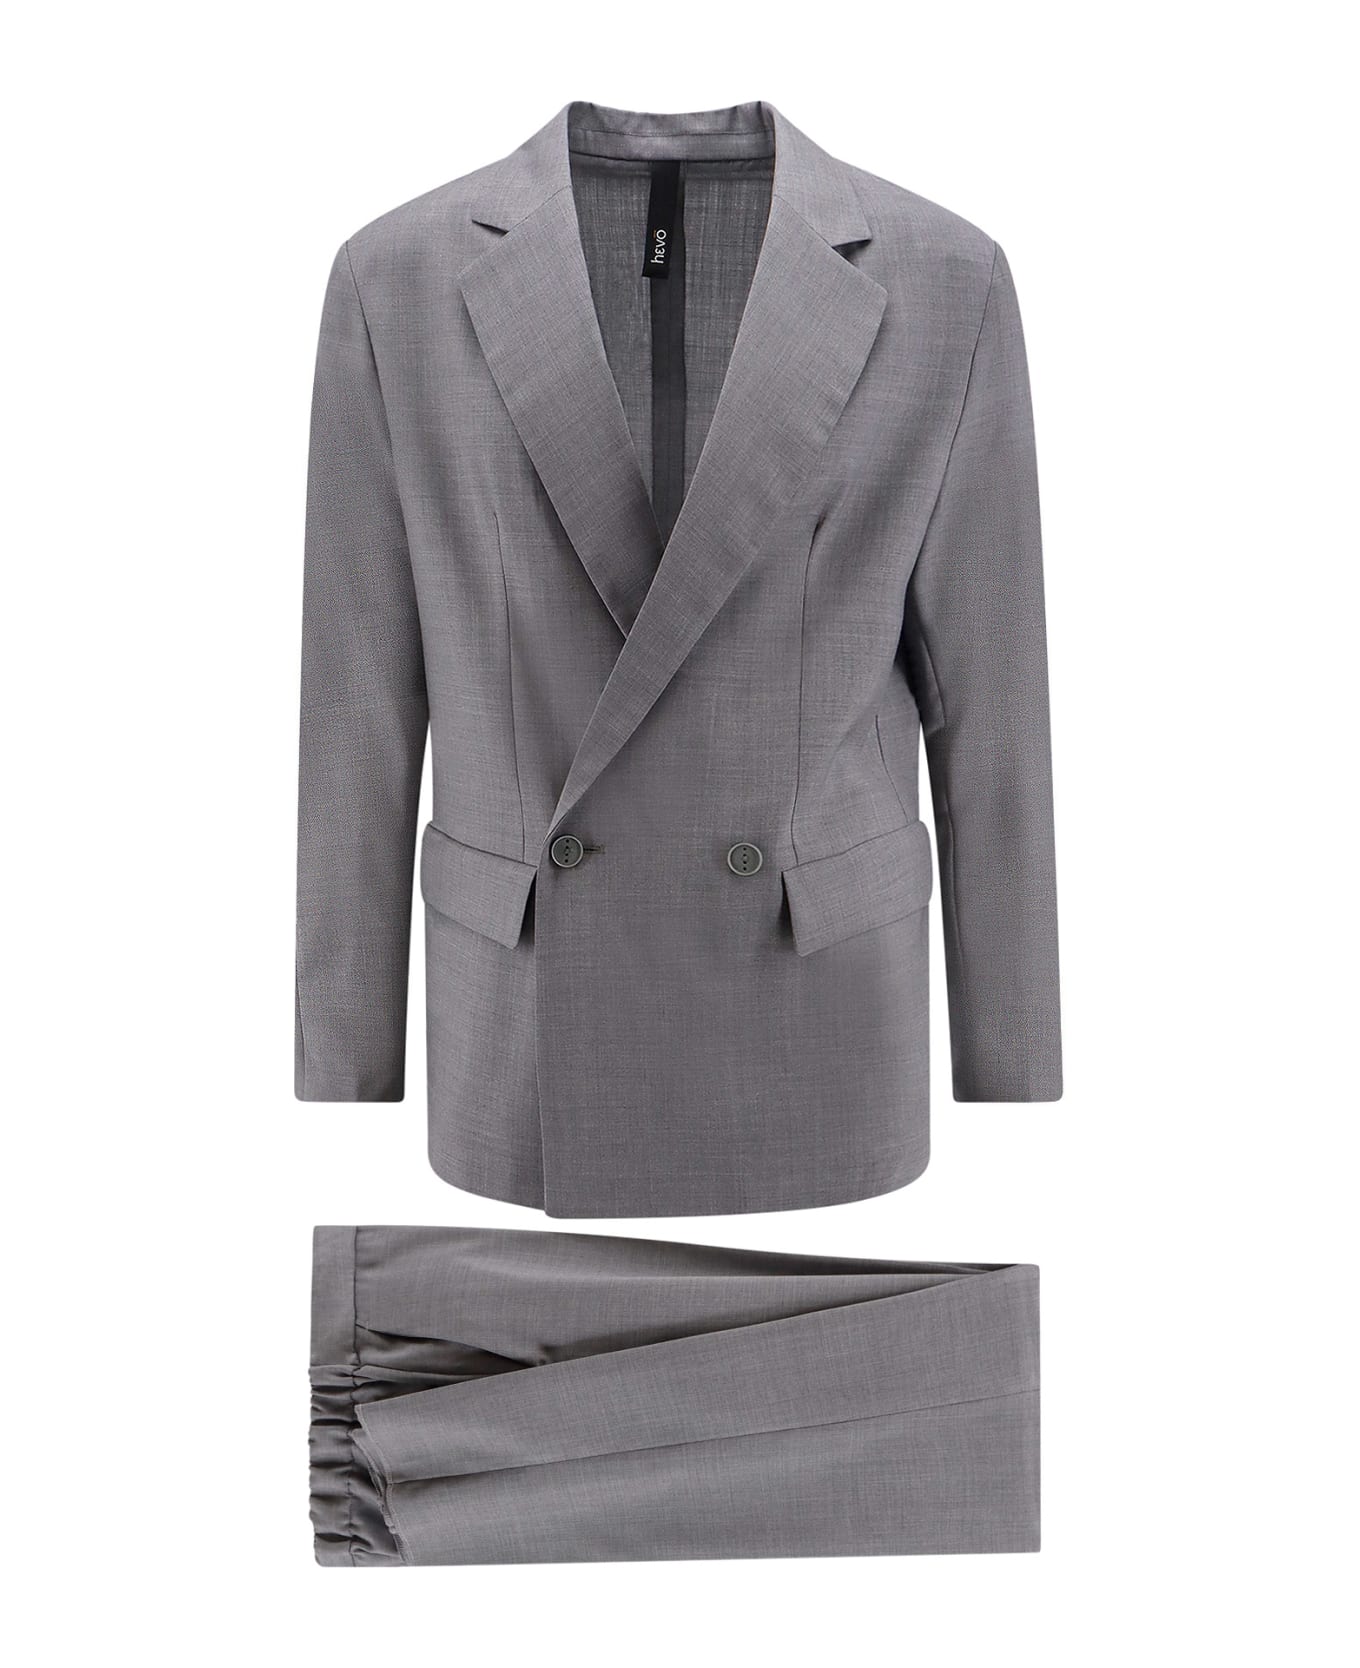 Hevò Suit - Grey